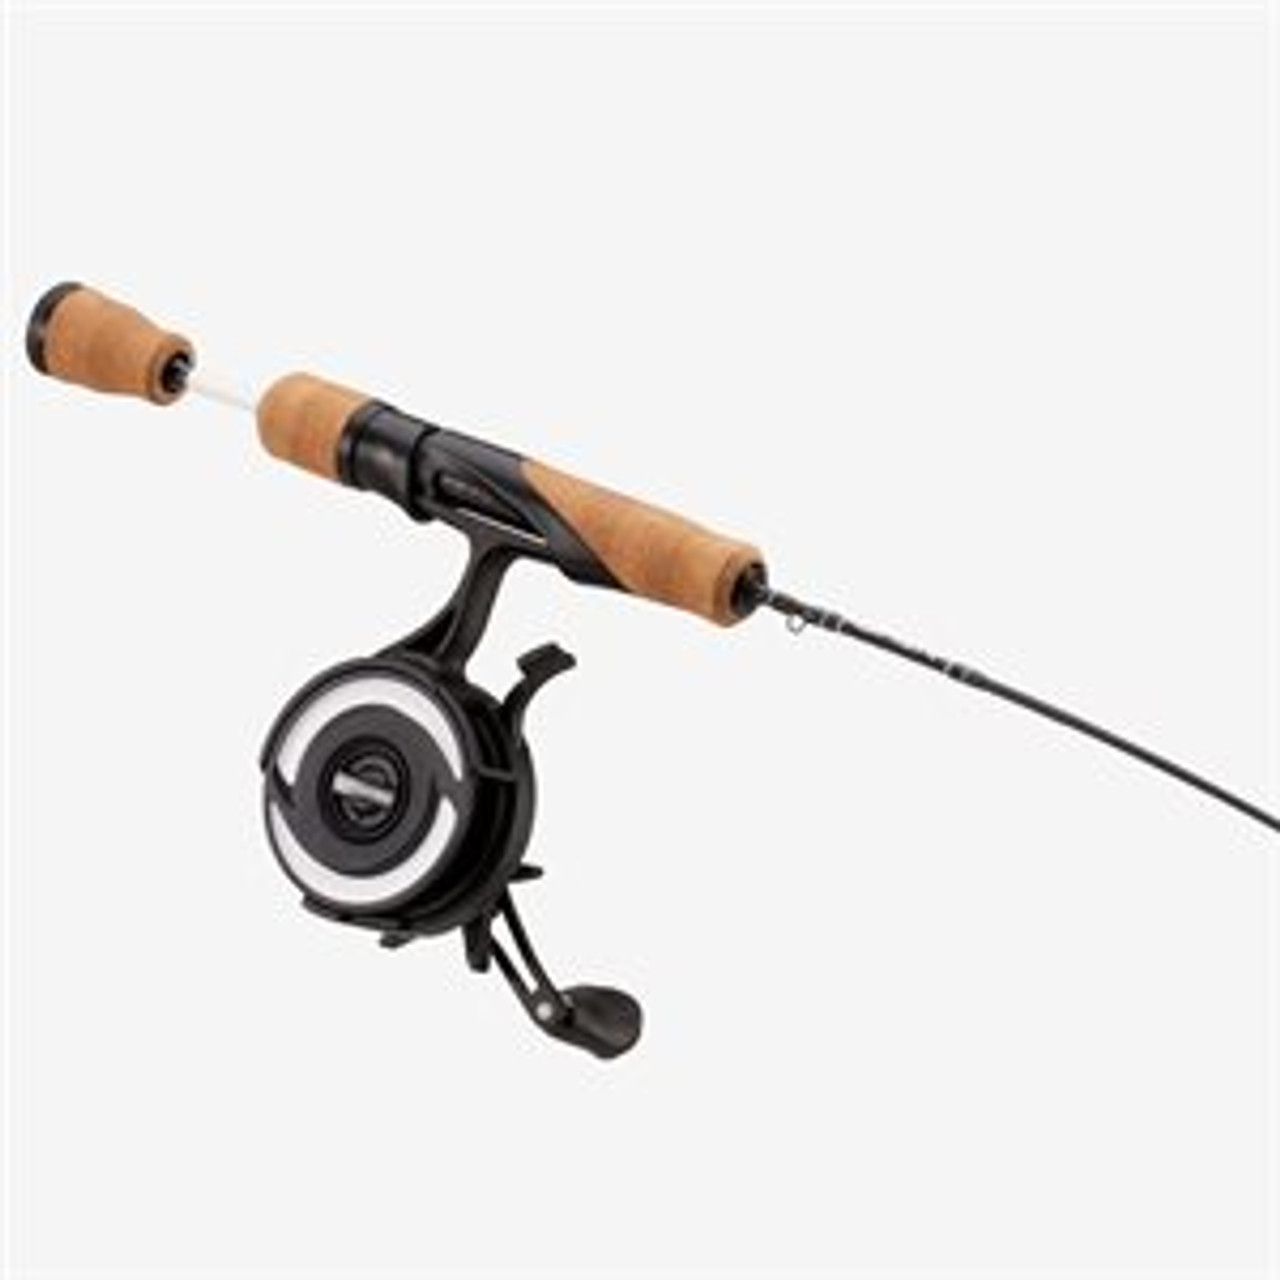 13 Fishing Widow Maker Ice Rod - Lone Butte Sporting Goods Ltd